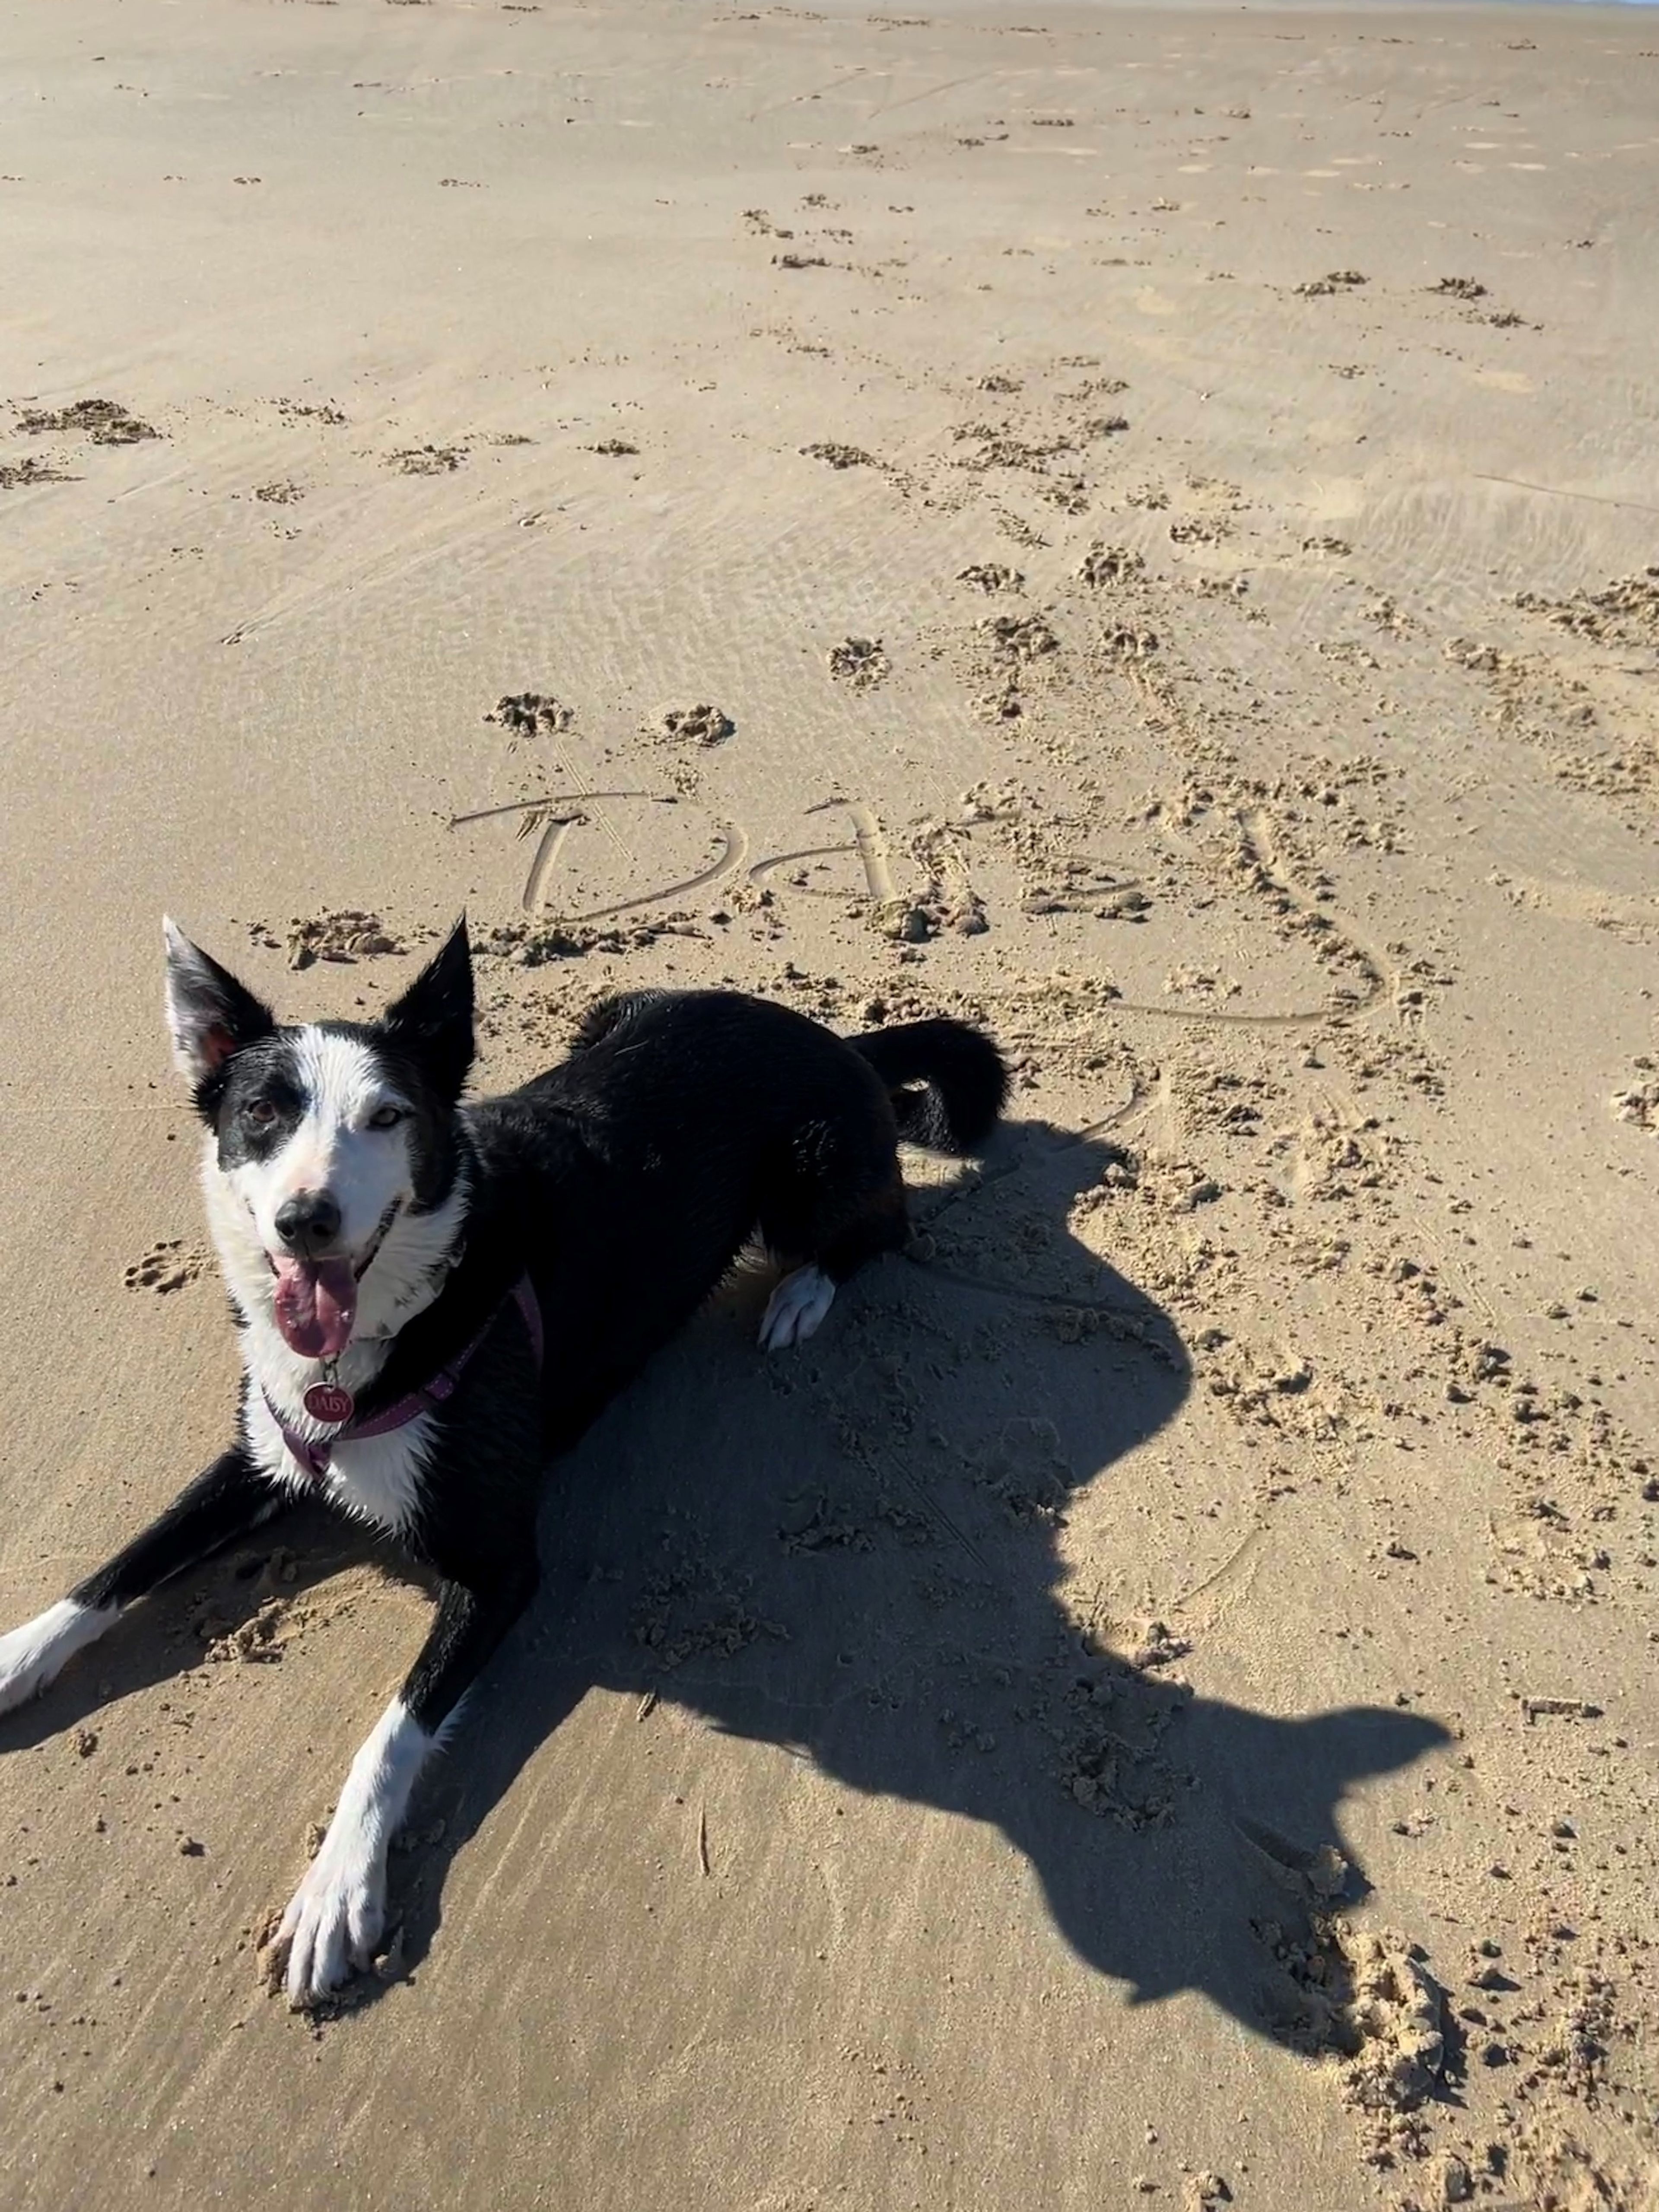 Beach-loving Daisy